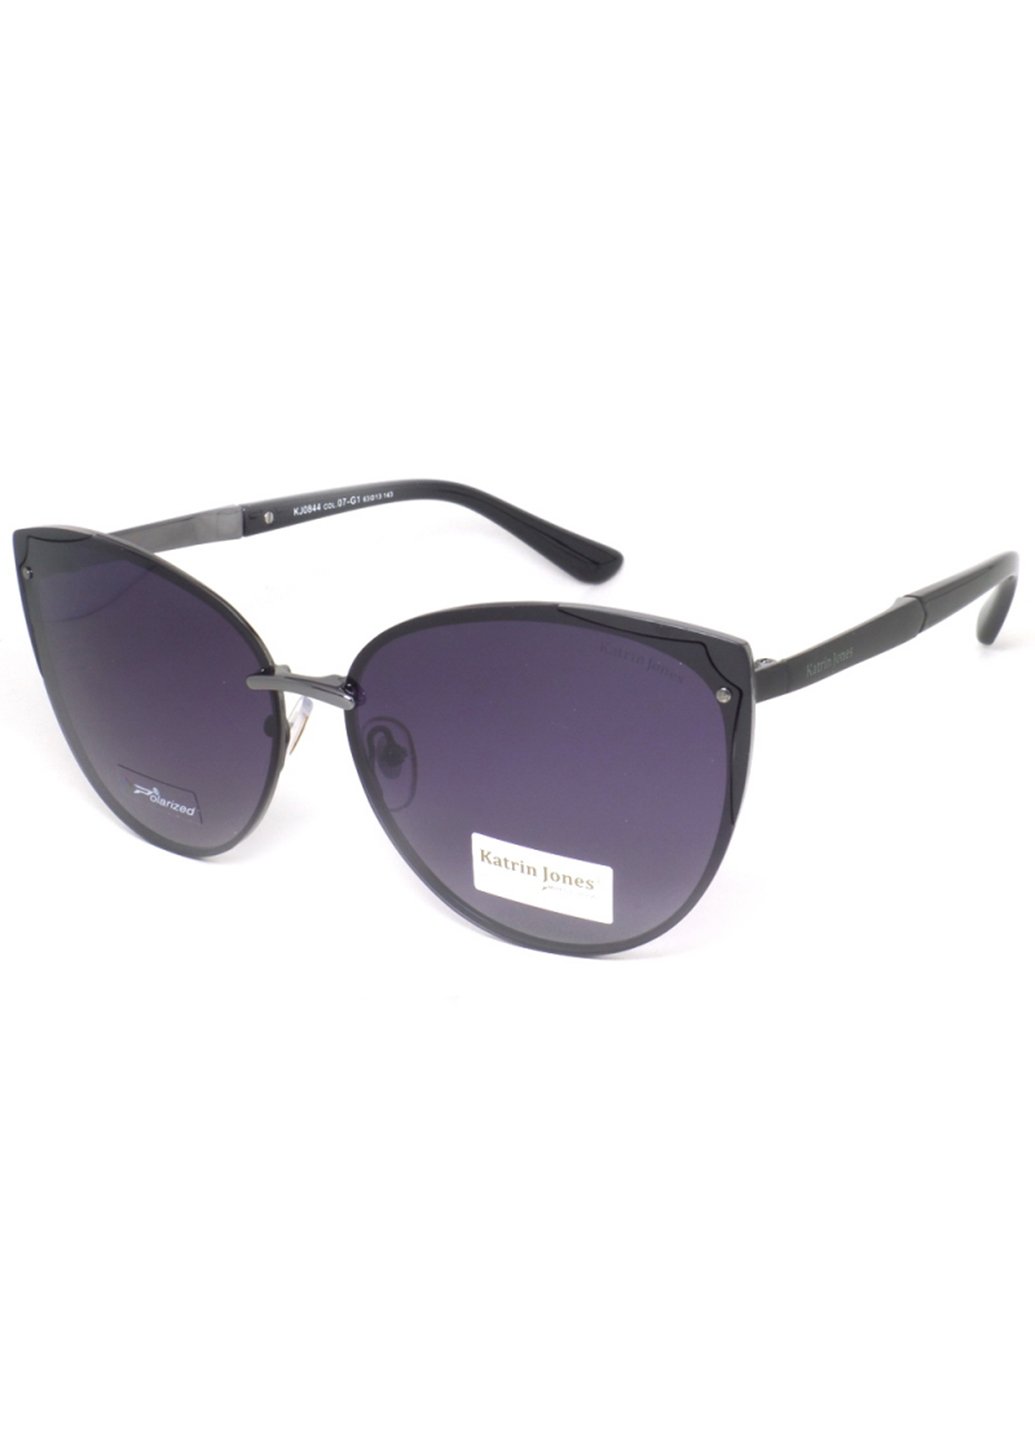 Купить Женские солнцезащитные очки Katrin Jones с поляризацией KJ0844 180005 - Фиолетовый в интернет-магазине